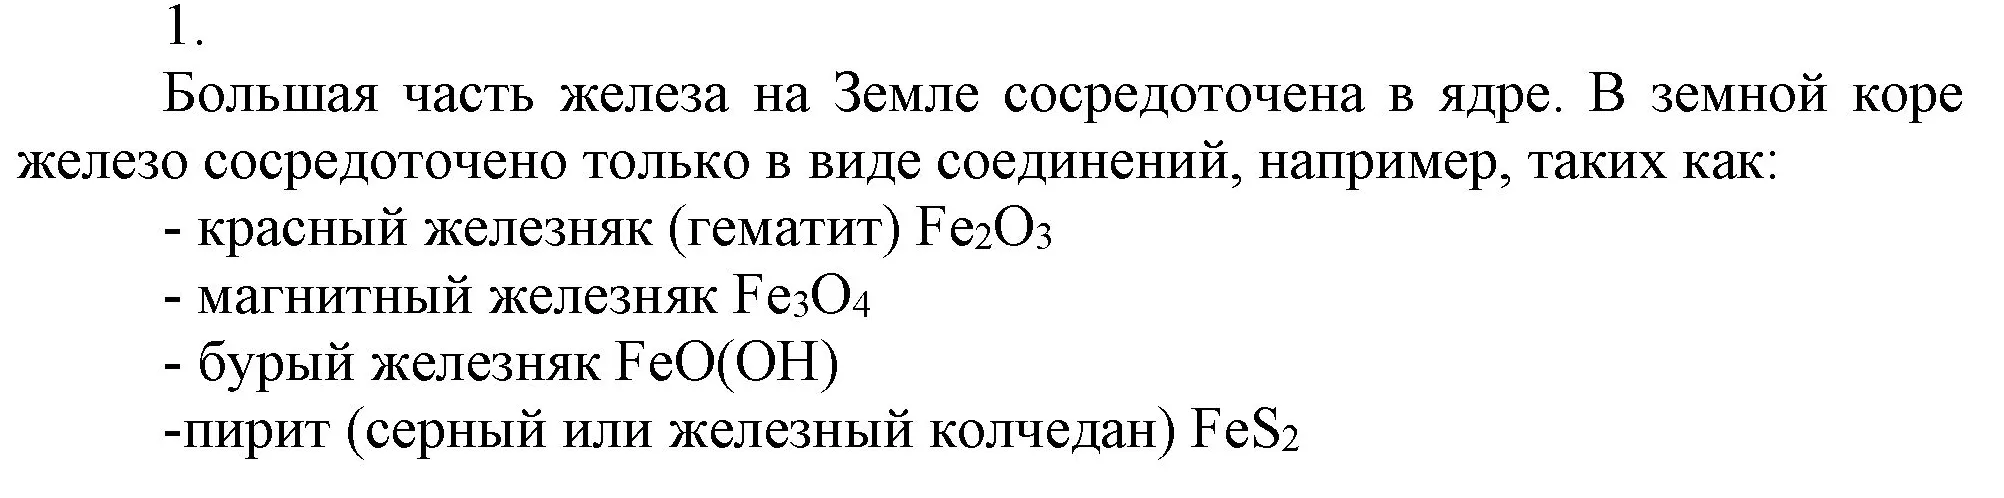 Решение номер 1 (страница 176) гдз по химии 9 класс Габриелян, Остроумов, учебник